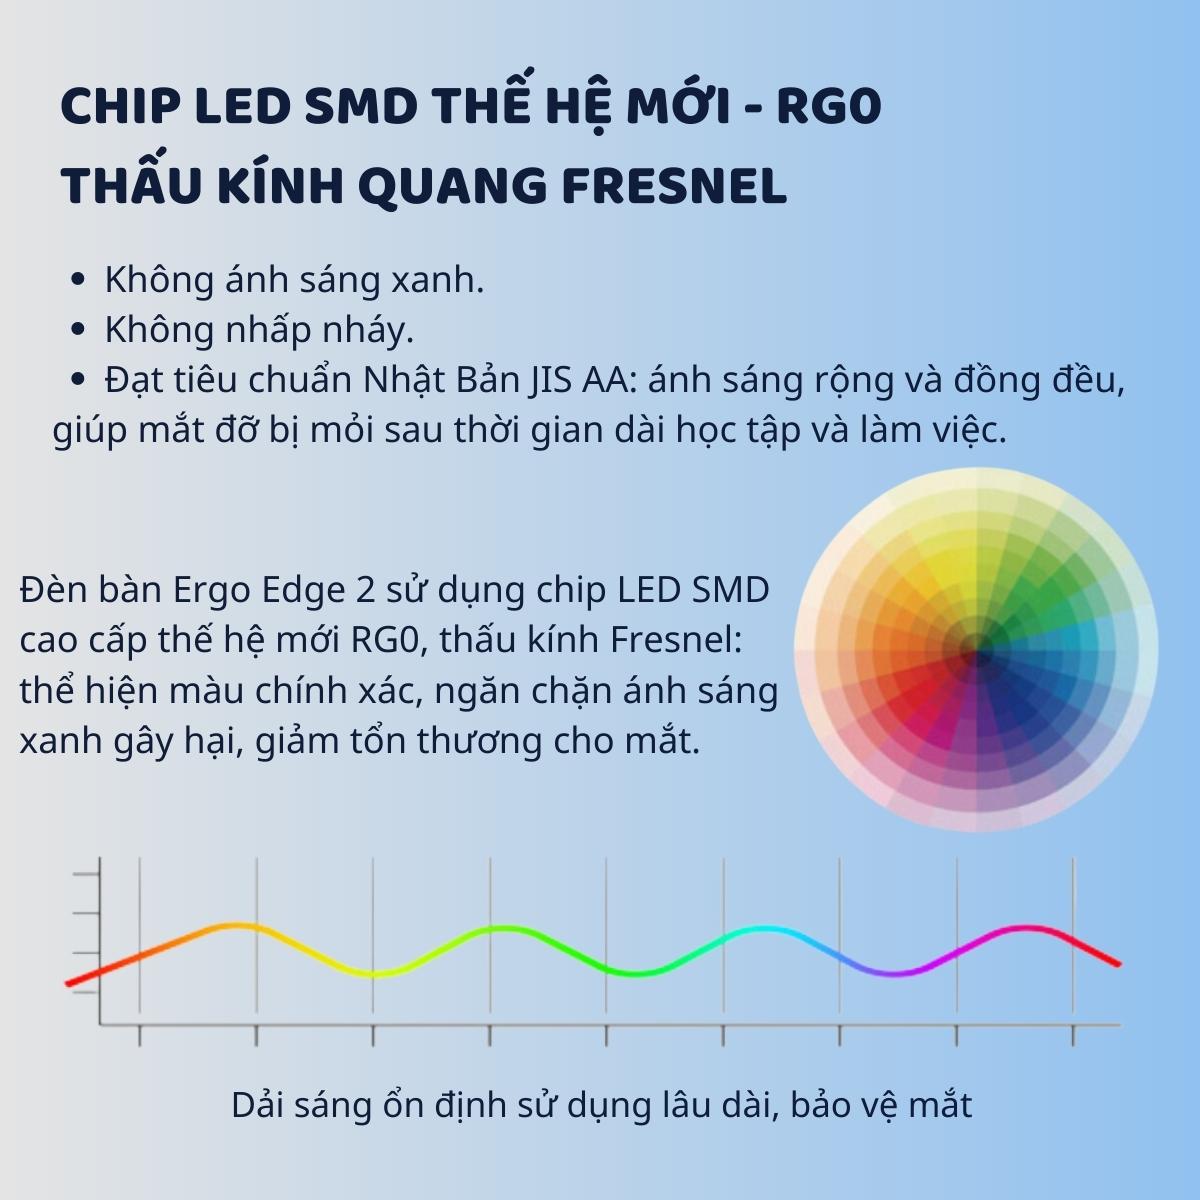 Đèn bàn học Led bảo vệ mắt Ergo Edge 2 DandiHome chống cận để học tập, làm việc, có thể kéo dài, gấp gọn - 4 chế độ sáng